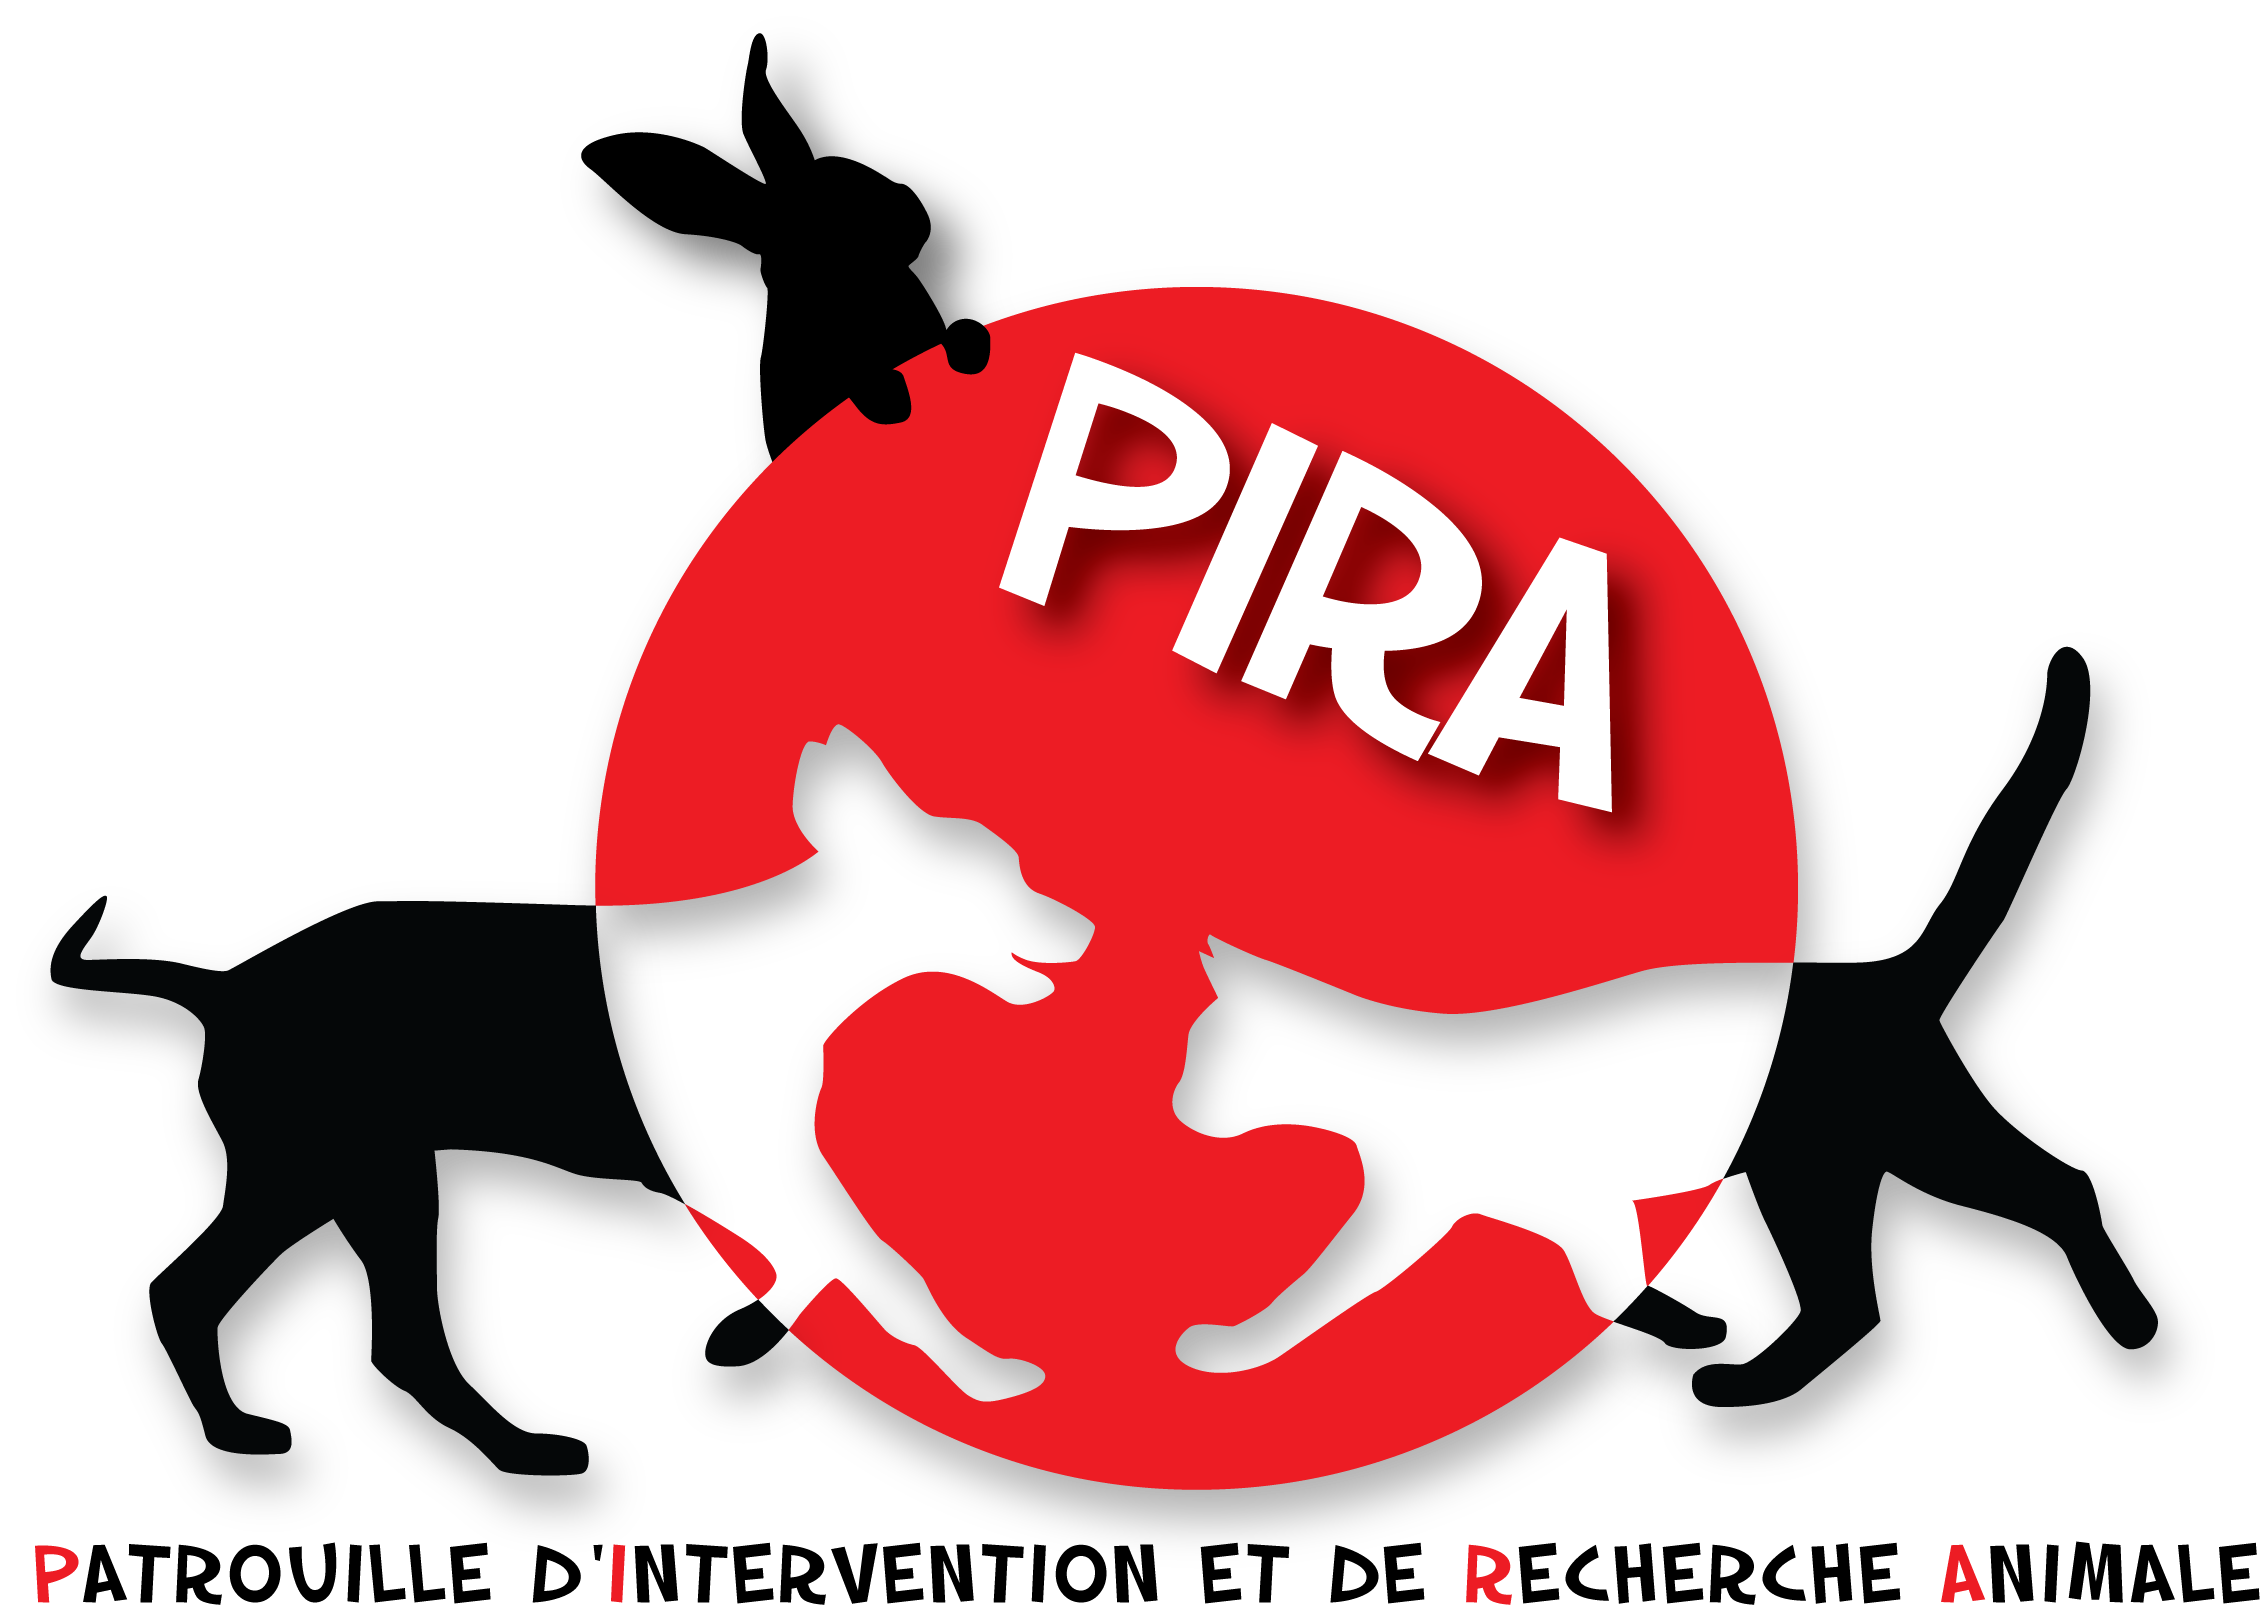 P.I.R.A  (Patrouille d'Intervention et de Recherche Animale)